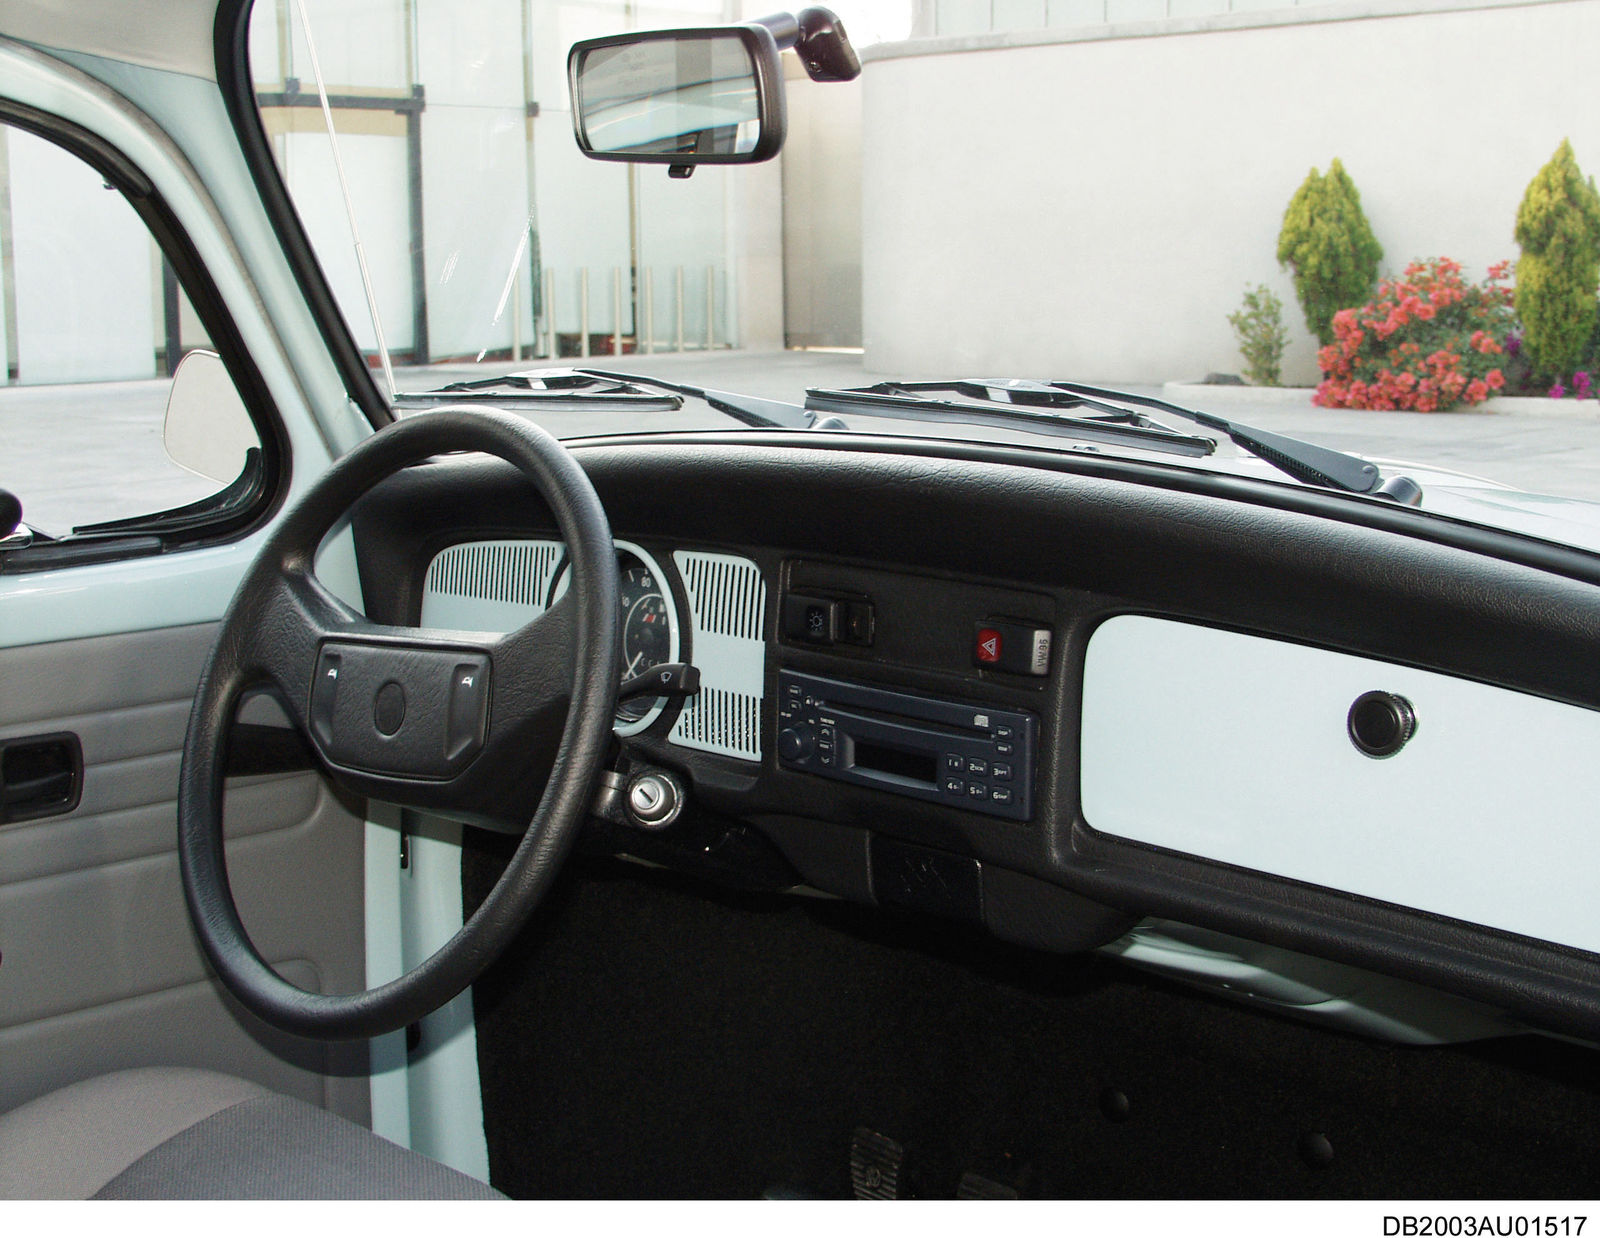 2003 VW Kaefer ltima Edicin Innenraumansicht